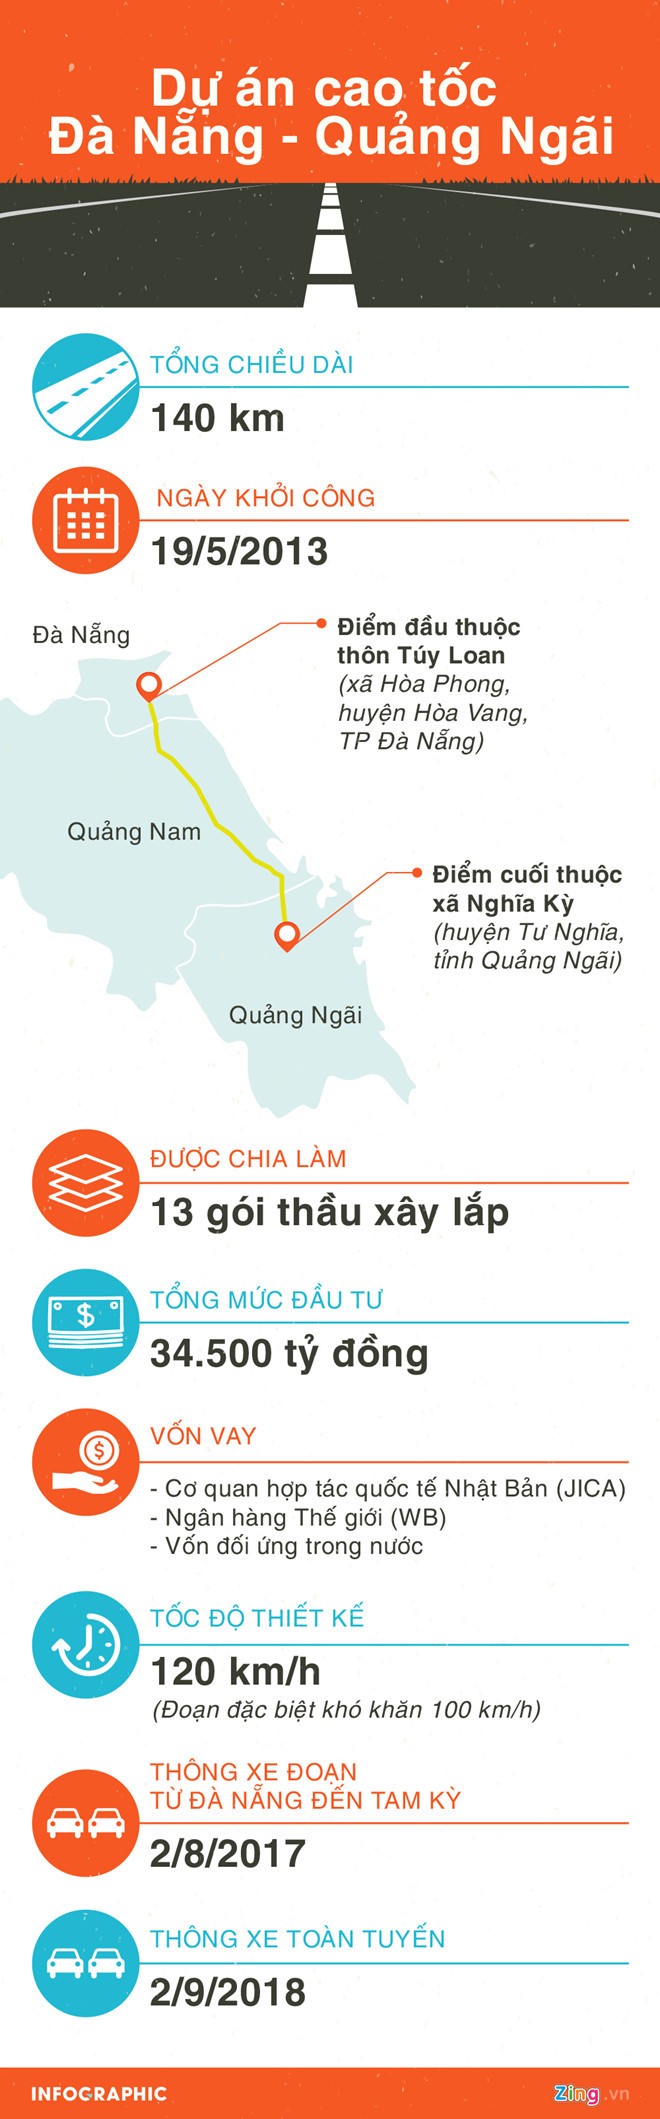 Duong dan cao toc 34.500 ty Da Nang - Quang Ngai sut lun, bay nguoi di duong-Hinh-3